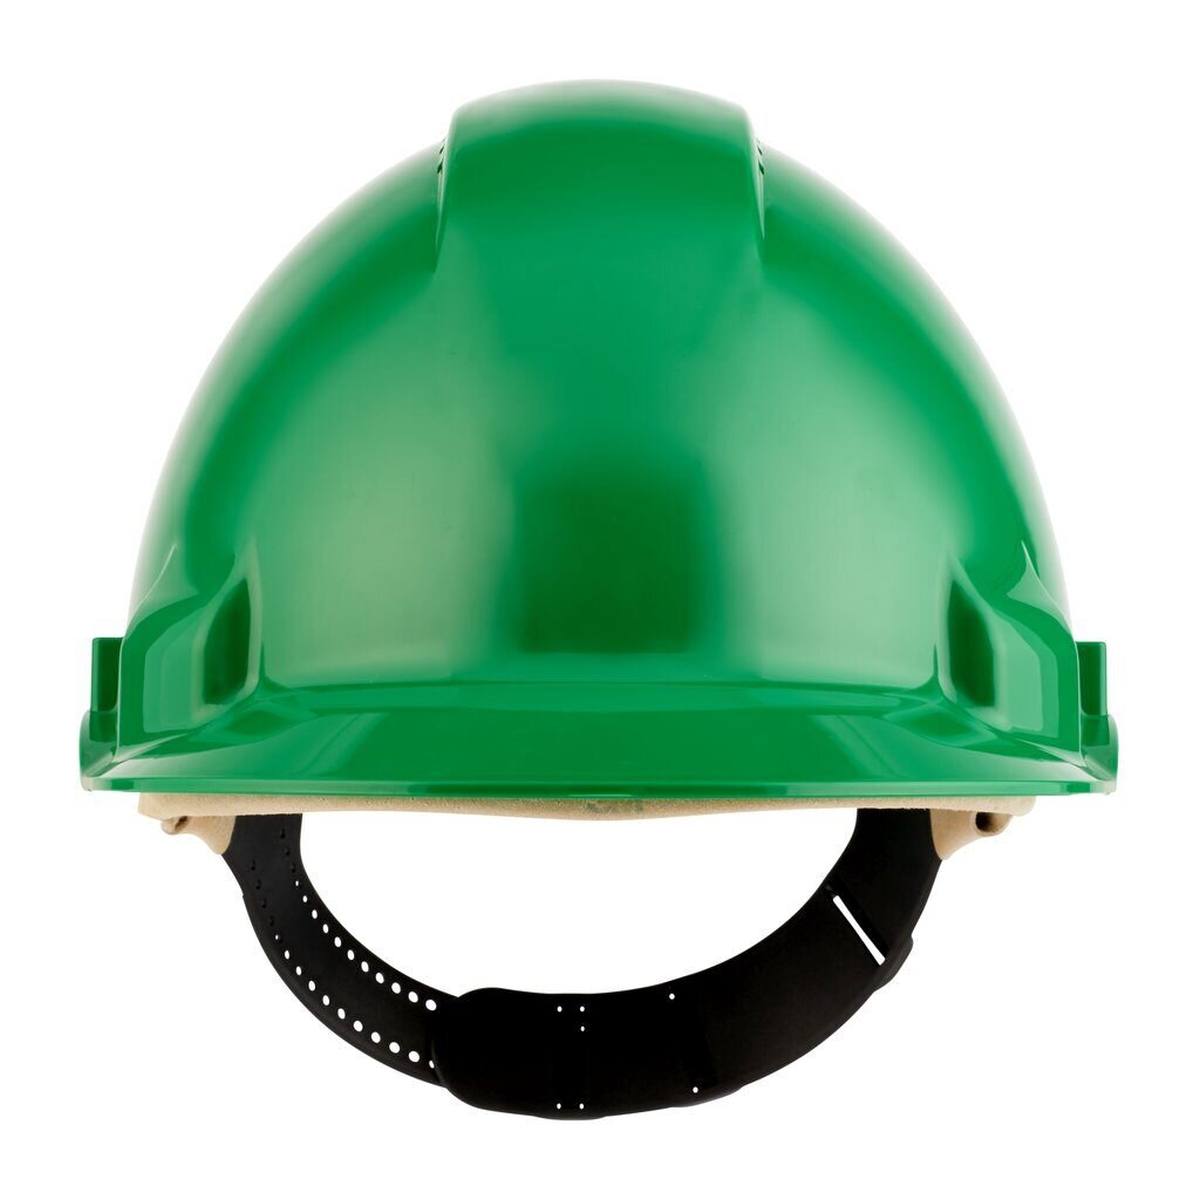 Elmetto di sicurezza 3M G3000 G30DUG in verde, ventilato, con uvicatore, pinlock e fascia antisudore in pelle